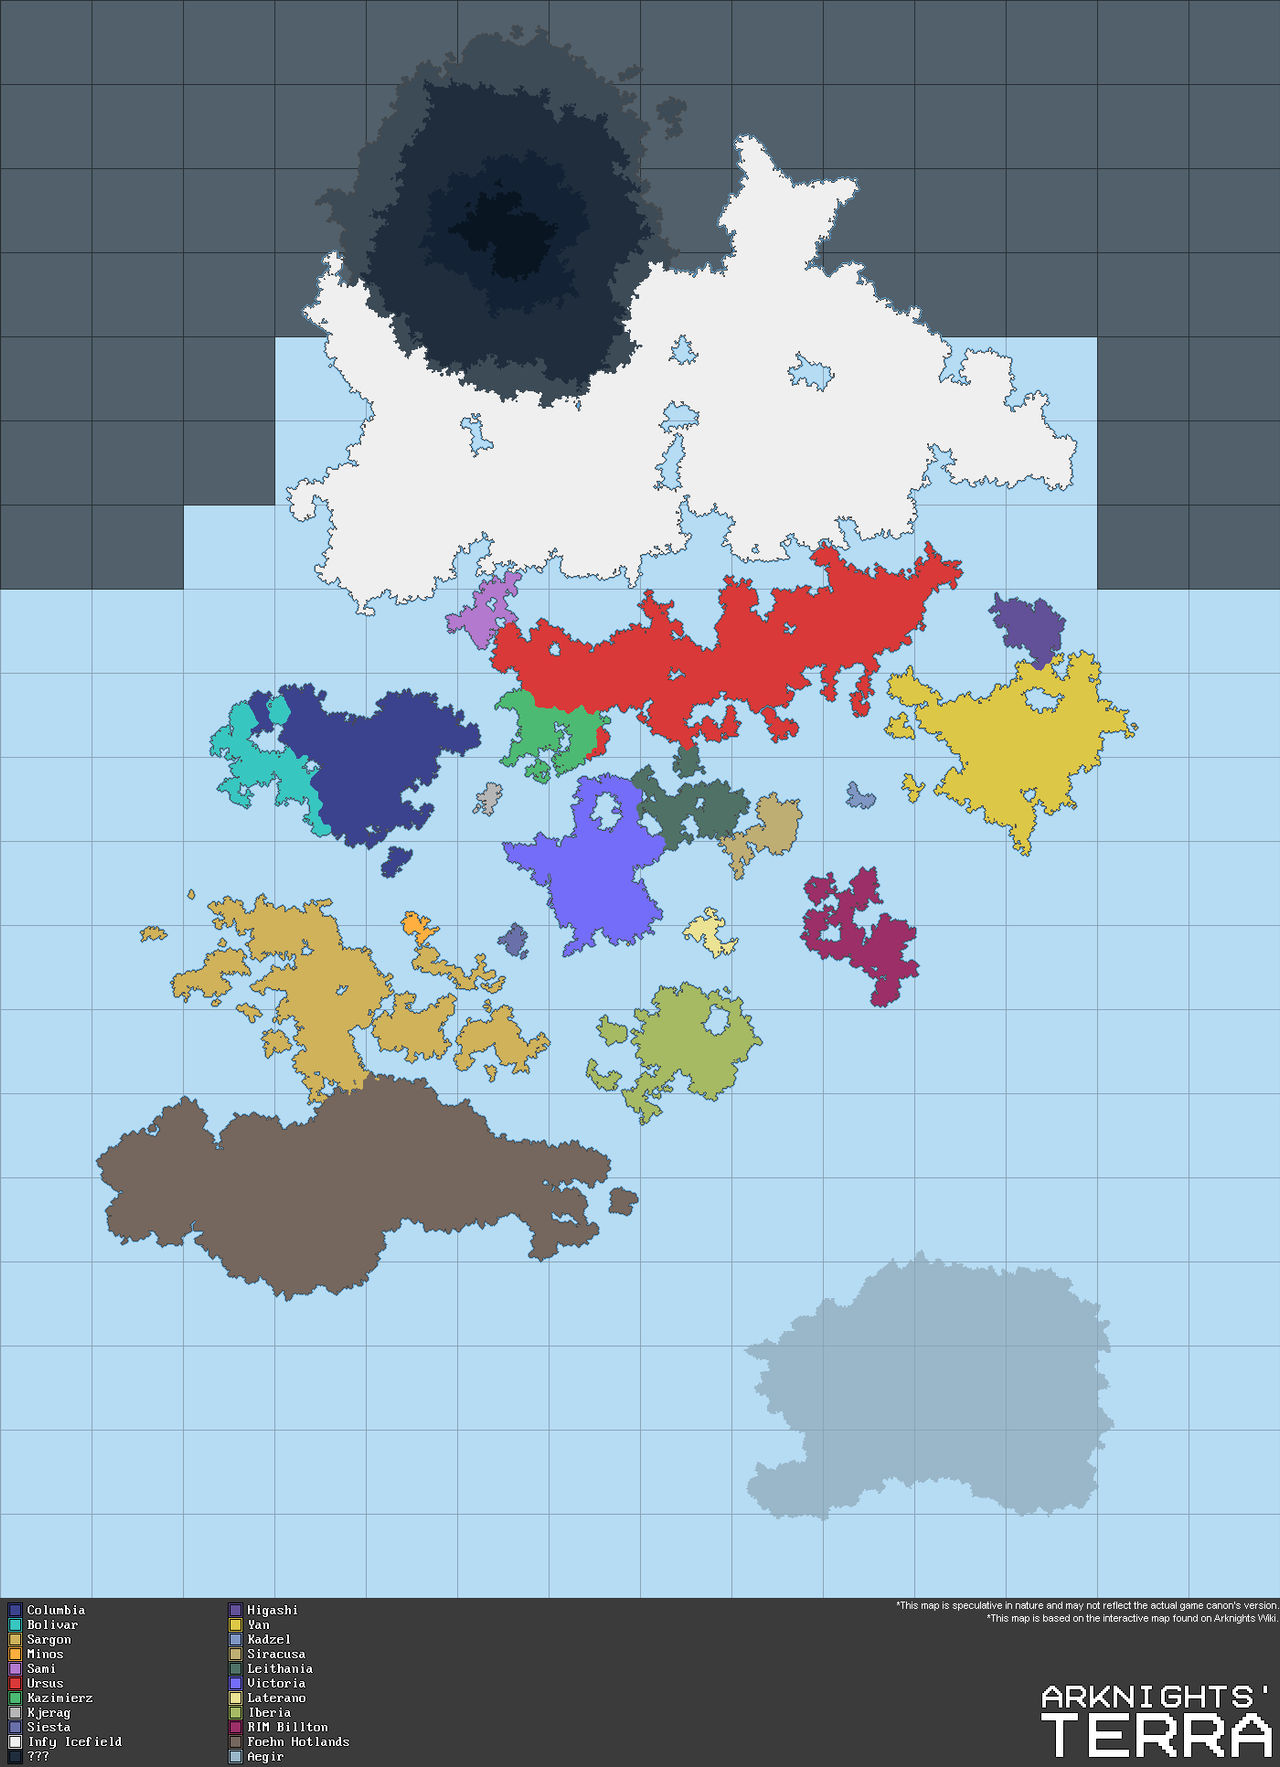 World Map - Terra from Arknights by Freak-Ops on DeviantArt